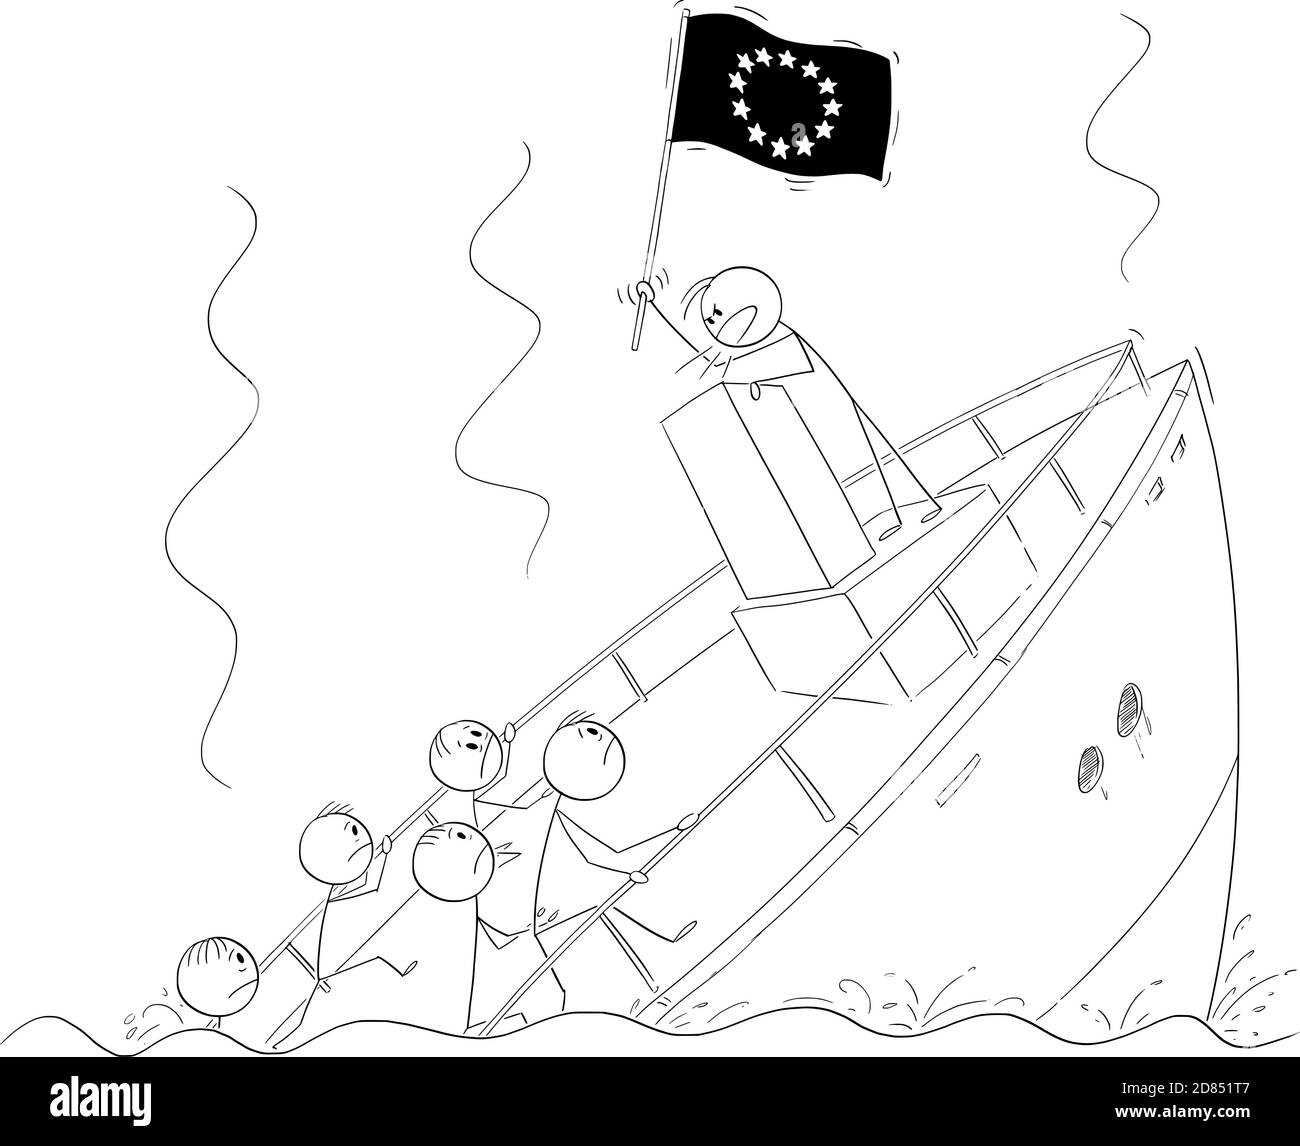 Vektor-Cartoon-Stick Figur Illustration von Politiker oder Führer hält EU-oder EU-Flagge und sprechen oder mit Rede, hinter Rednerpult während des Schiffsinkens ignorieren die Krise und die Realität. Stock Vektor